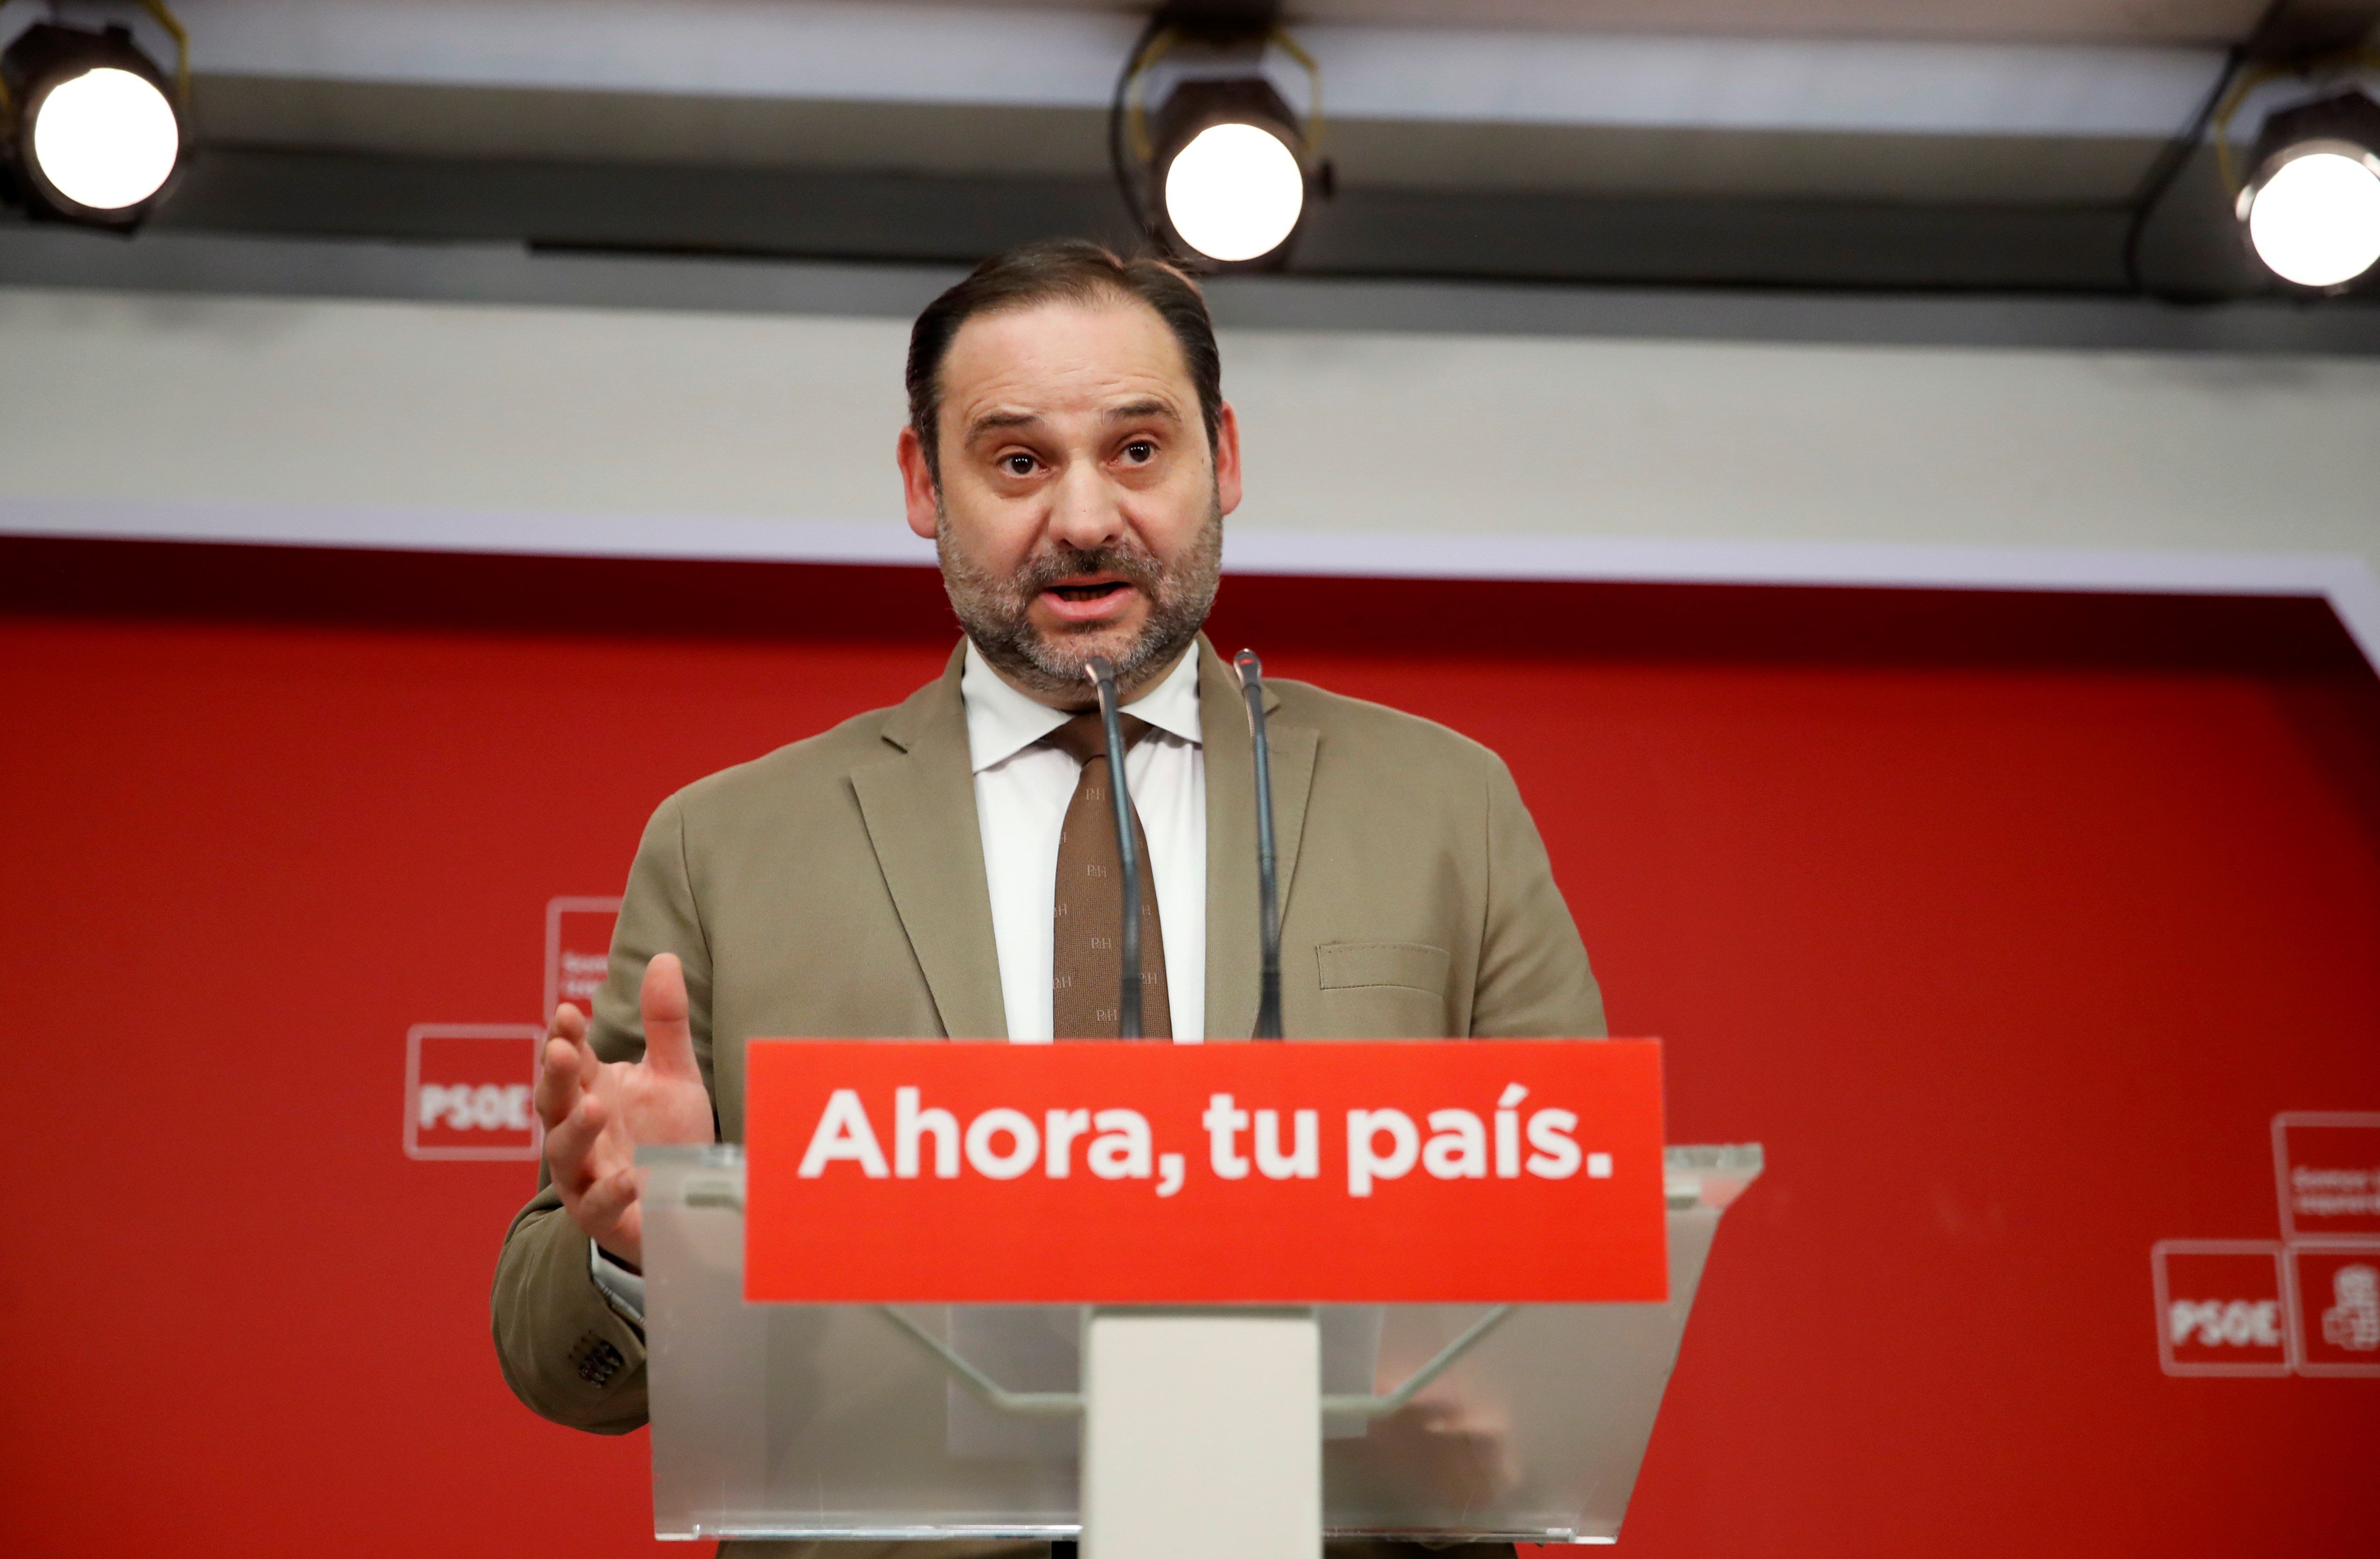 El PSOE subratlla que Felip VI ha advocat per "la construcció del futur"